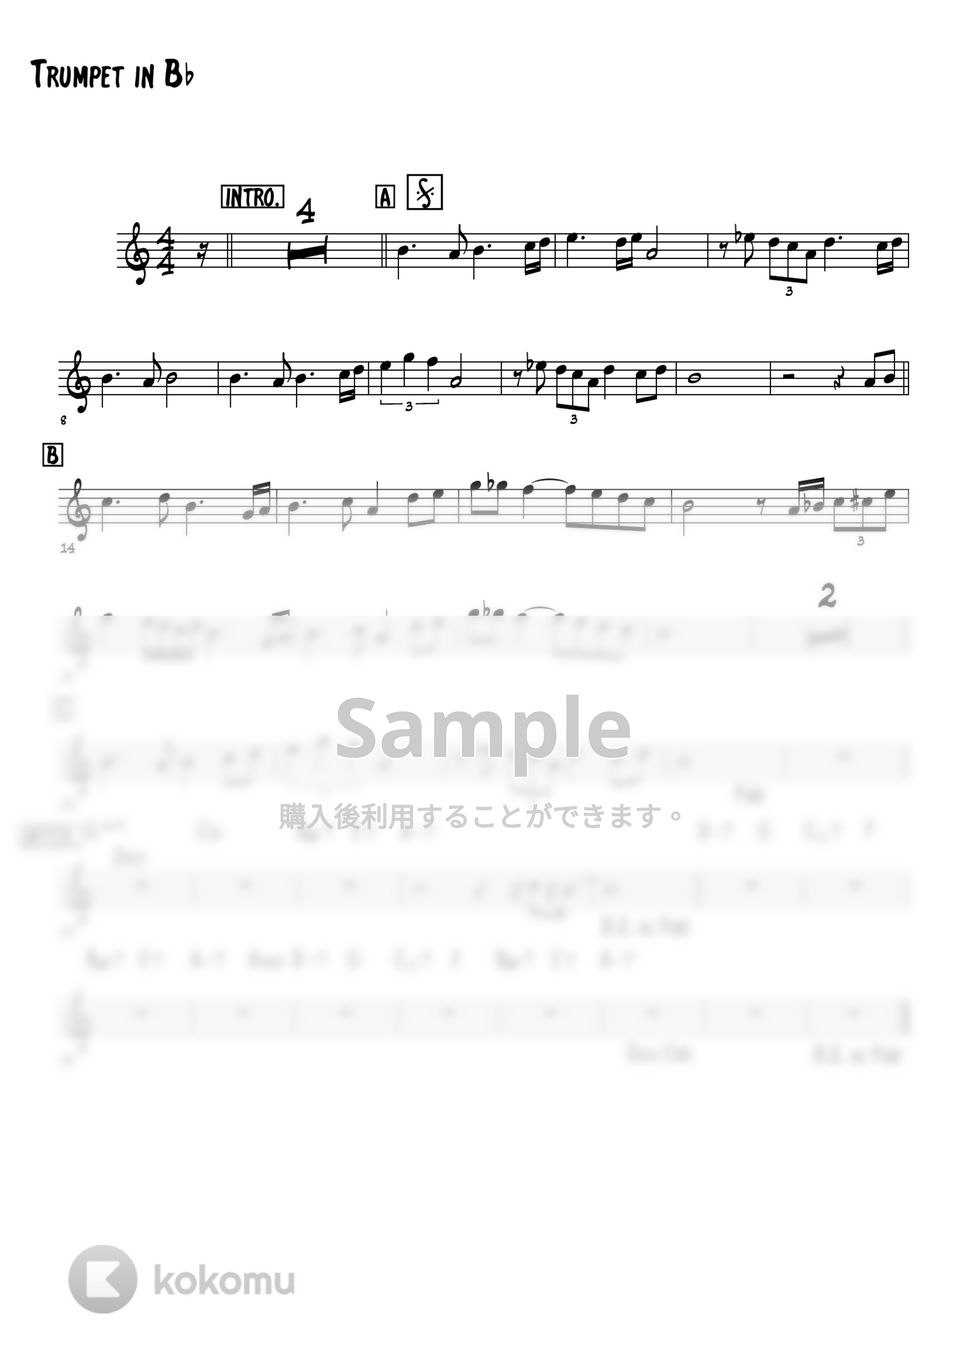 ルパン三世 - ルパン三世・愛のテーマ (Bb楽器用) by 高田将利